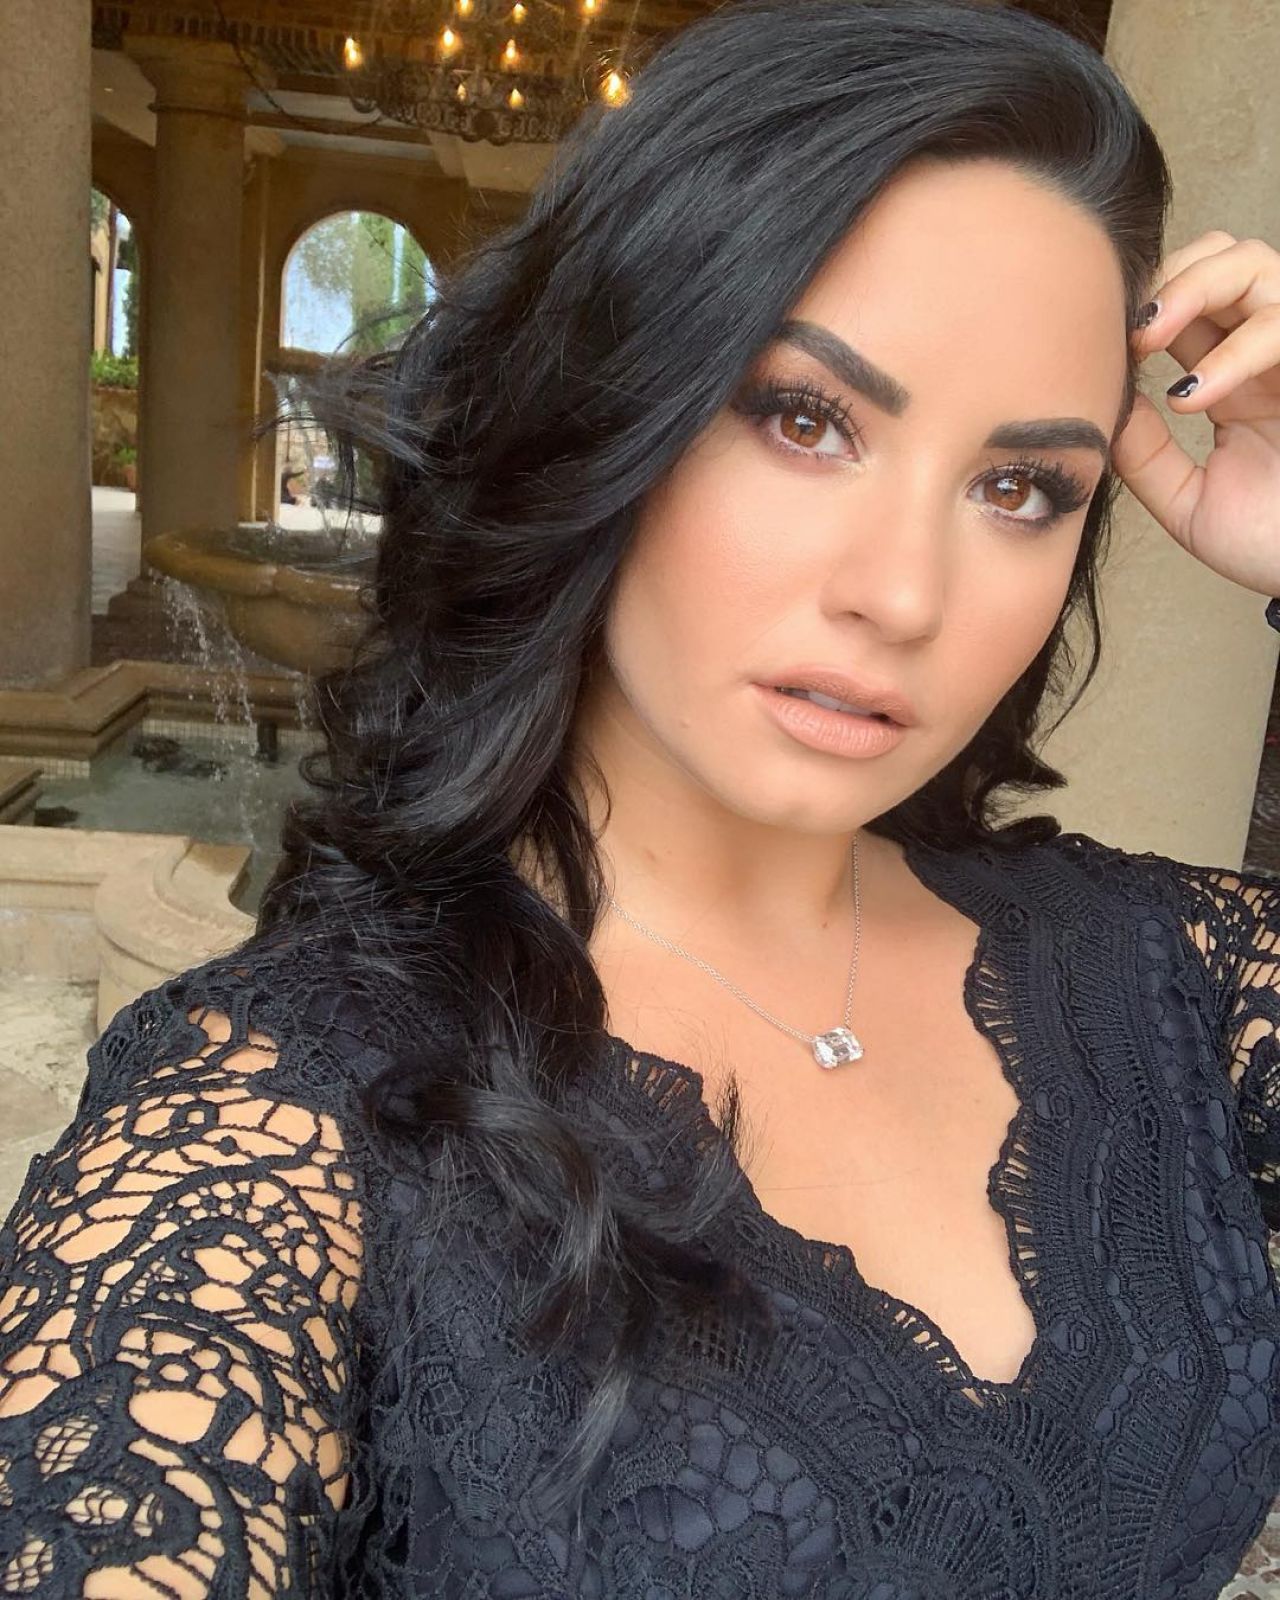 Demi Lovato - Personal Pics 01/15/20191280 x 1600